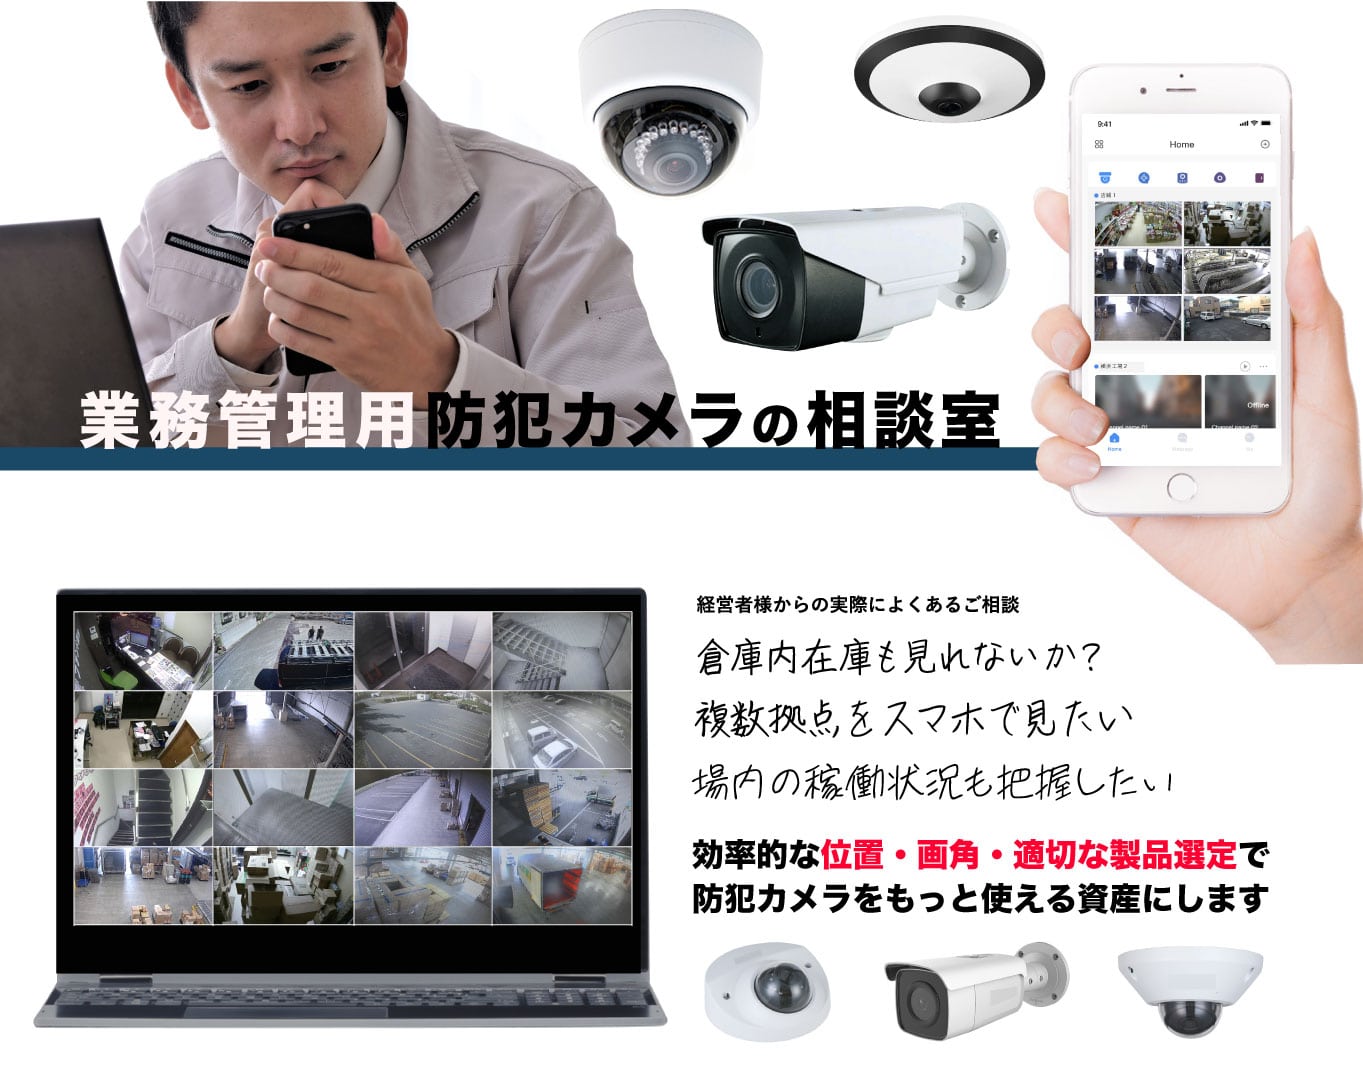 業務用管理用防犯カメラの相談室 日本ホールシステムへご相談ください。経営者様からの実際のご相談でよくあるのが、倉庫内在庫も見れないか、複数拠点をスマホで見たい、施設内の稼働状況を把握したいなどです。効率的な位置と画角と適切な製品選定で防犯カメラをもっと使える資産にします